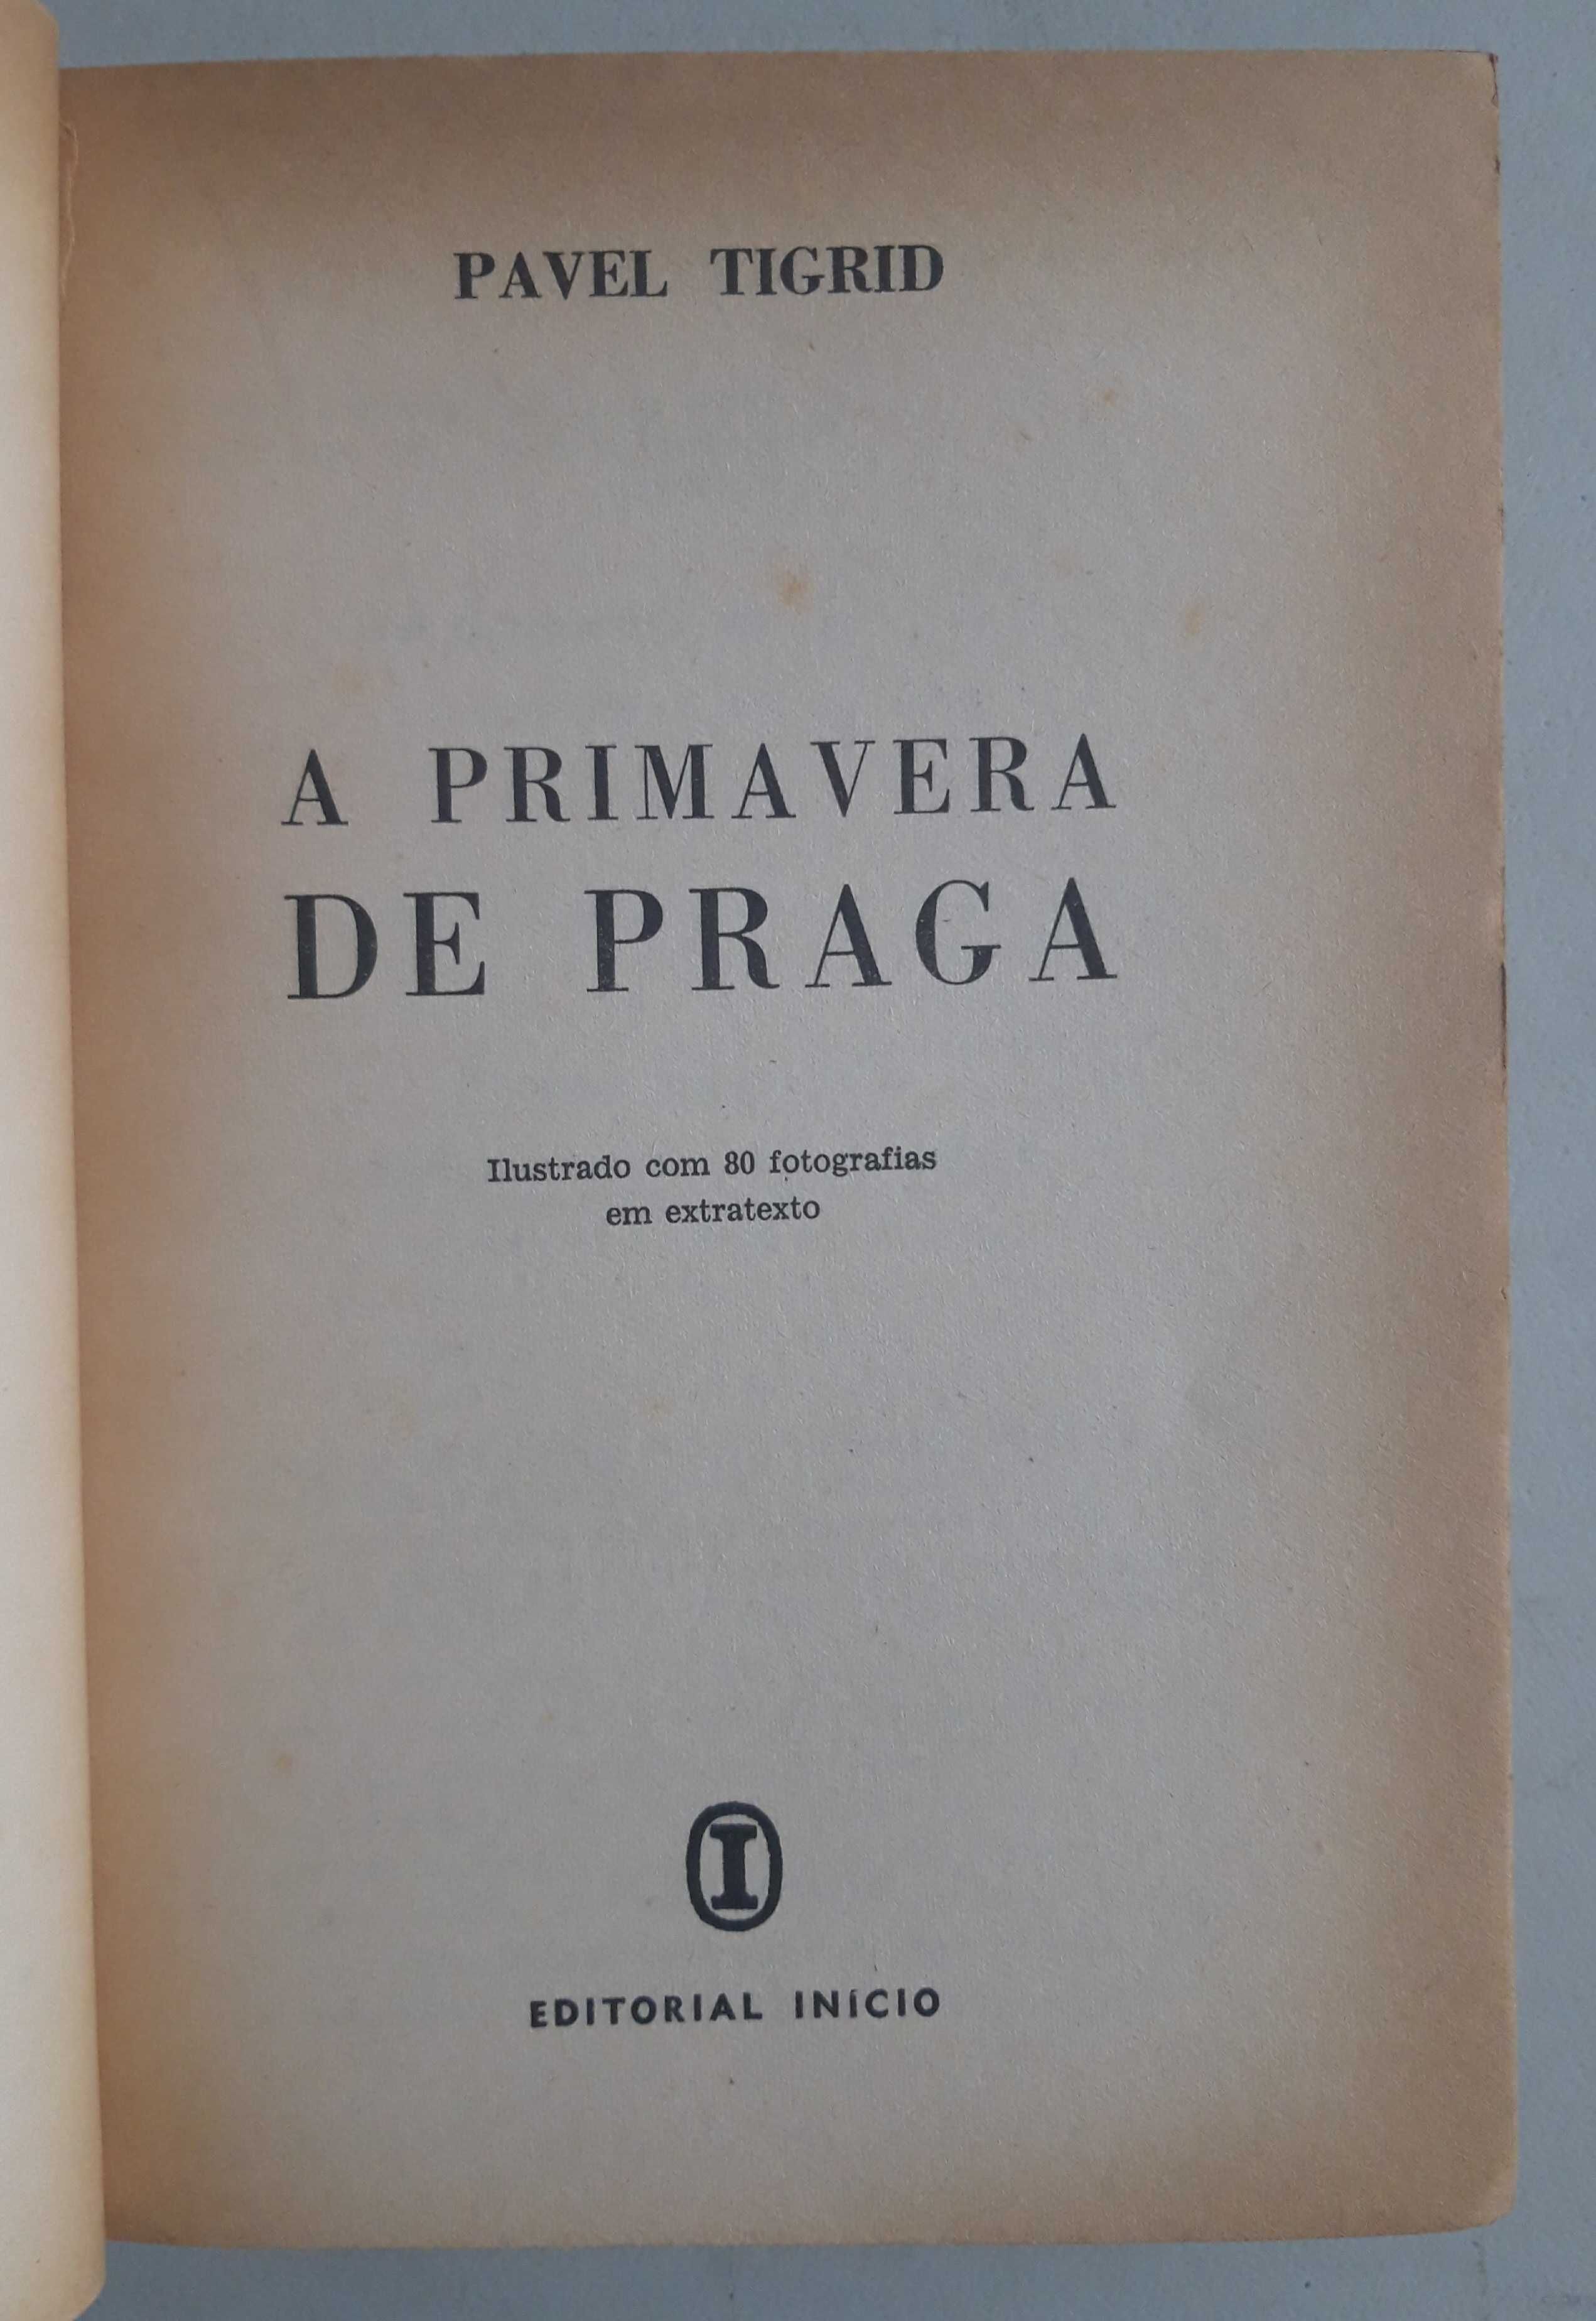 Livro PA-2 - Pavel Tigrid - A Primavera de Praga